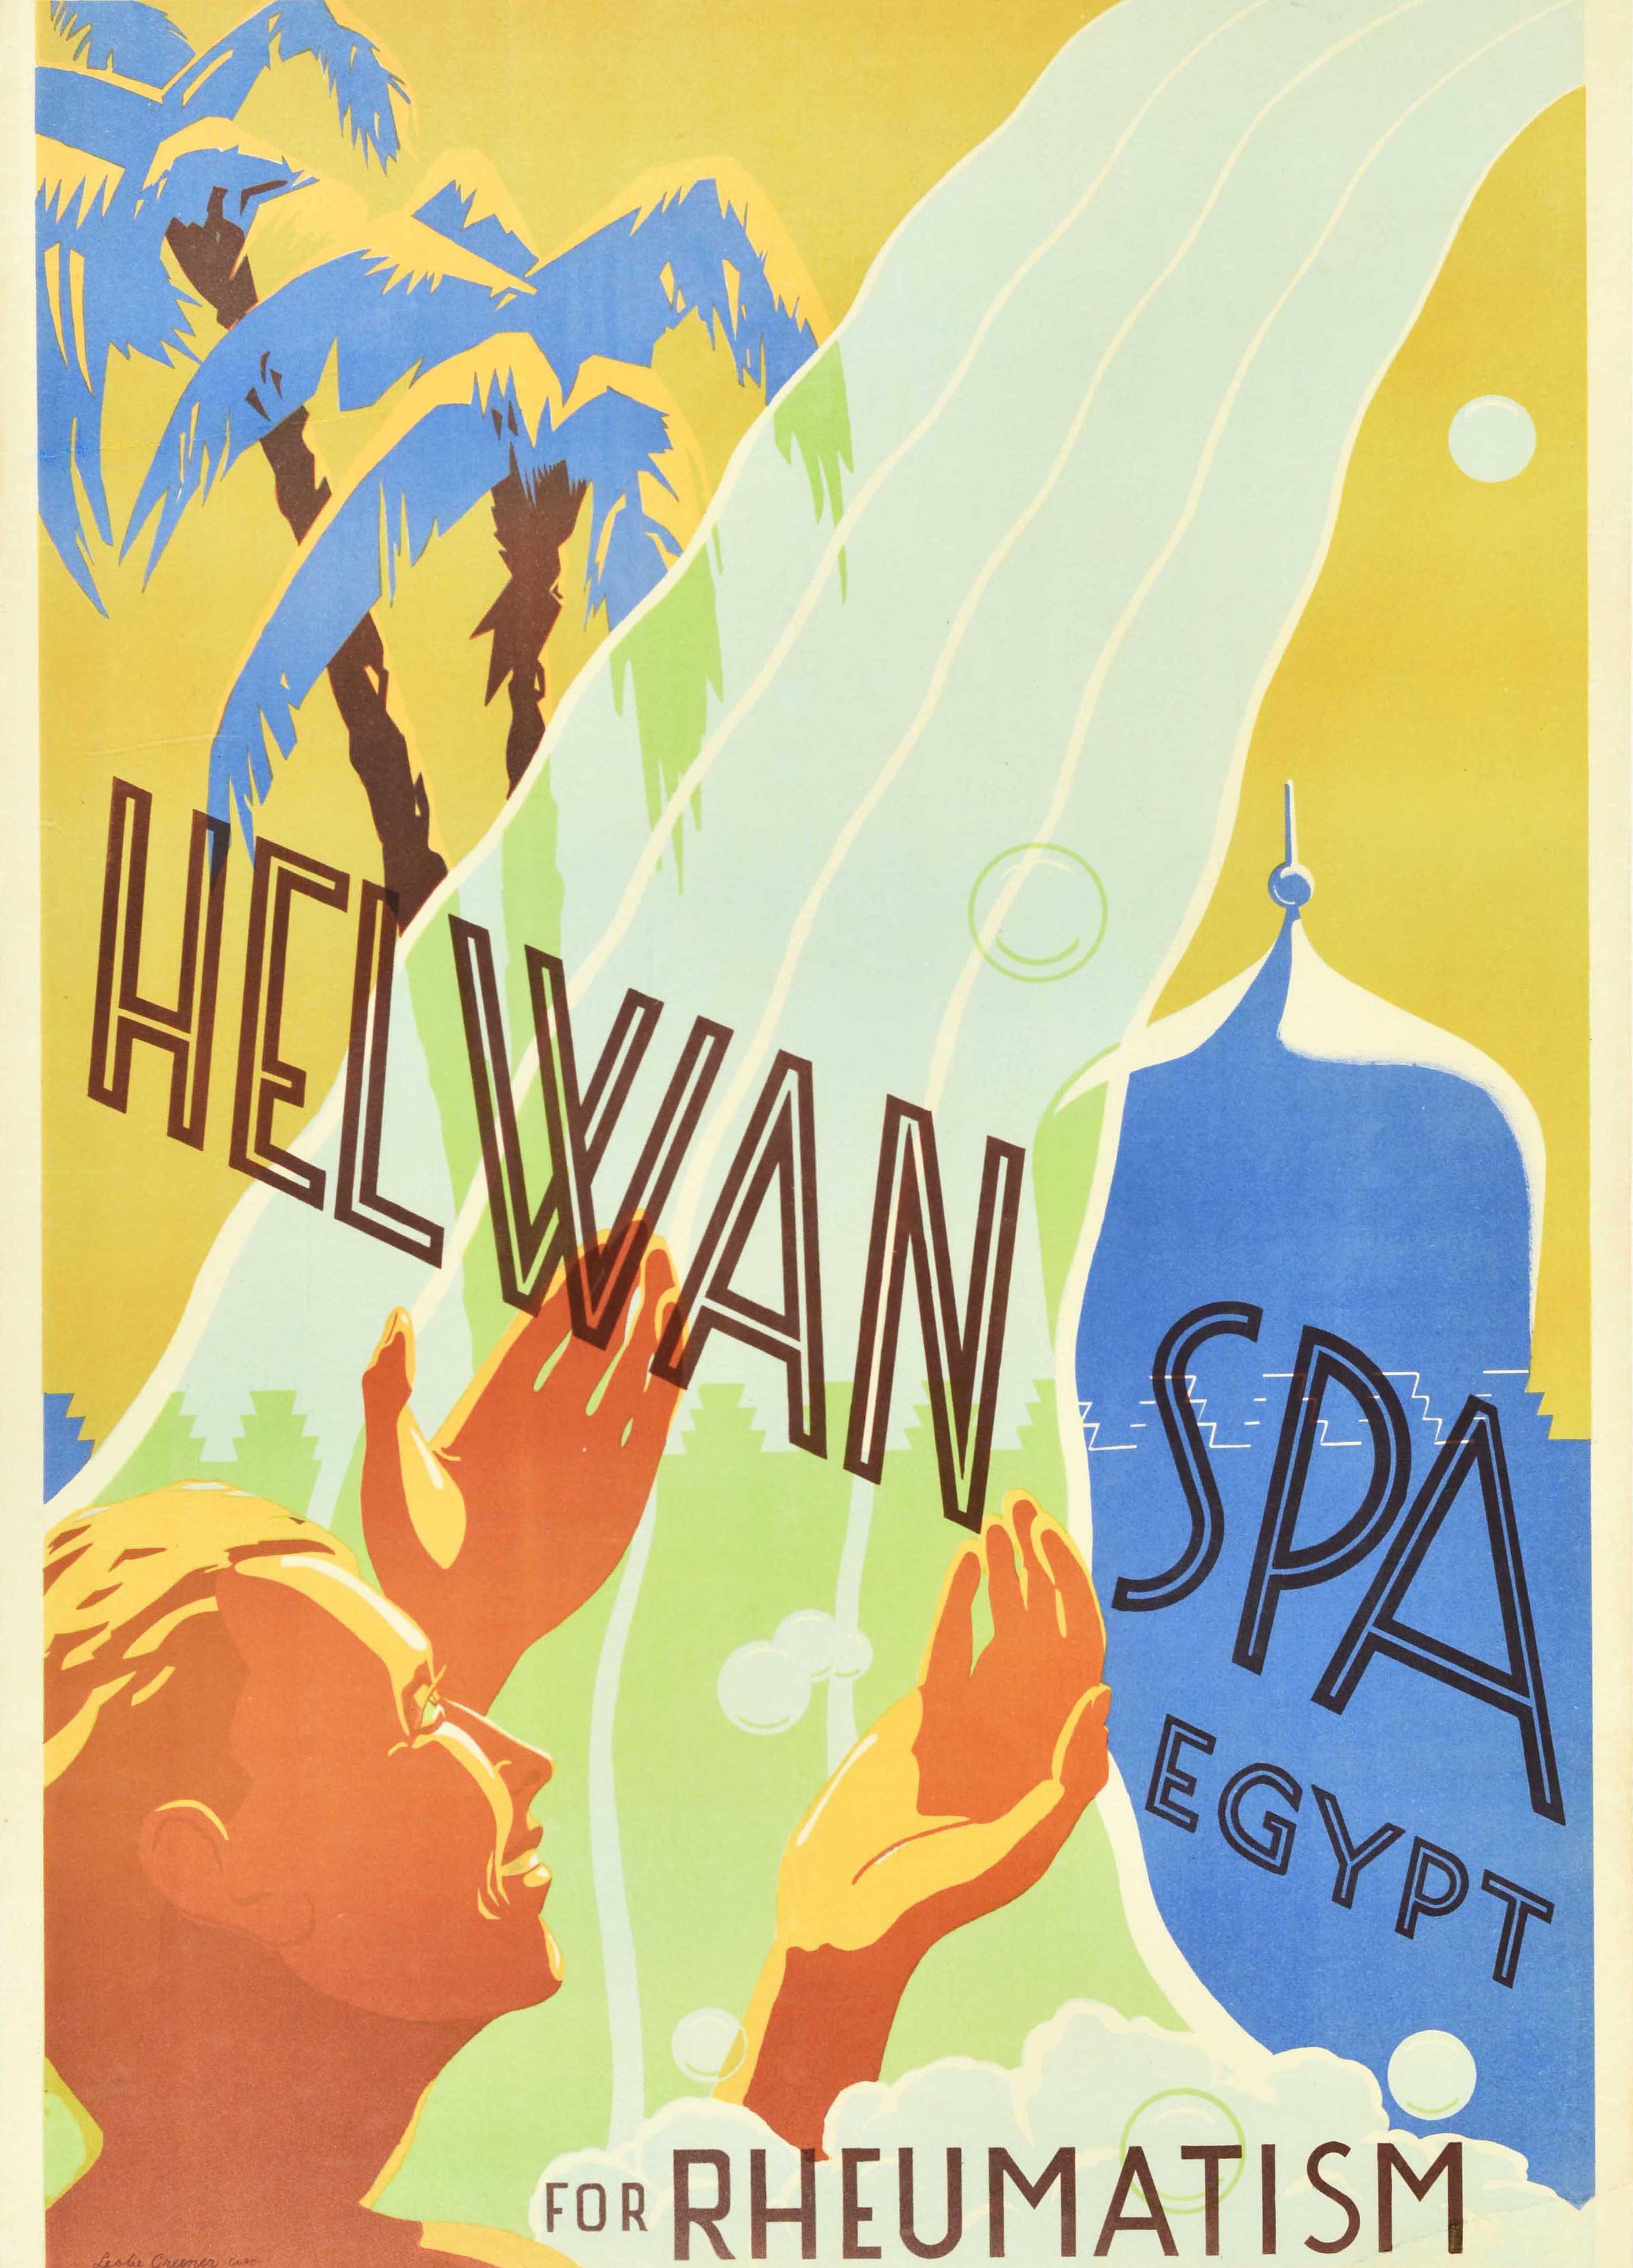 Originales antikes Gesundheitsplakat, das für das Helwan Spa in Ägypten zur Behandlung von Rheuma wirbt. Es zeigt ein farbenfrohes und helles Design von Herbert Leslie Greener (1900-1974) mit einer lächelnden Person, die unter einem Wasserfall der